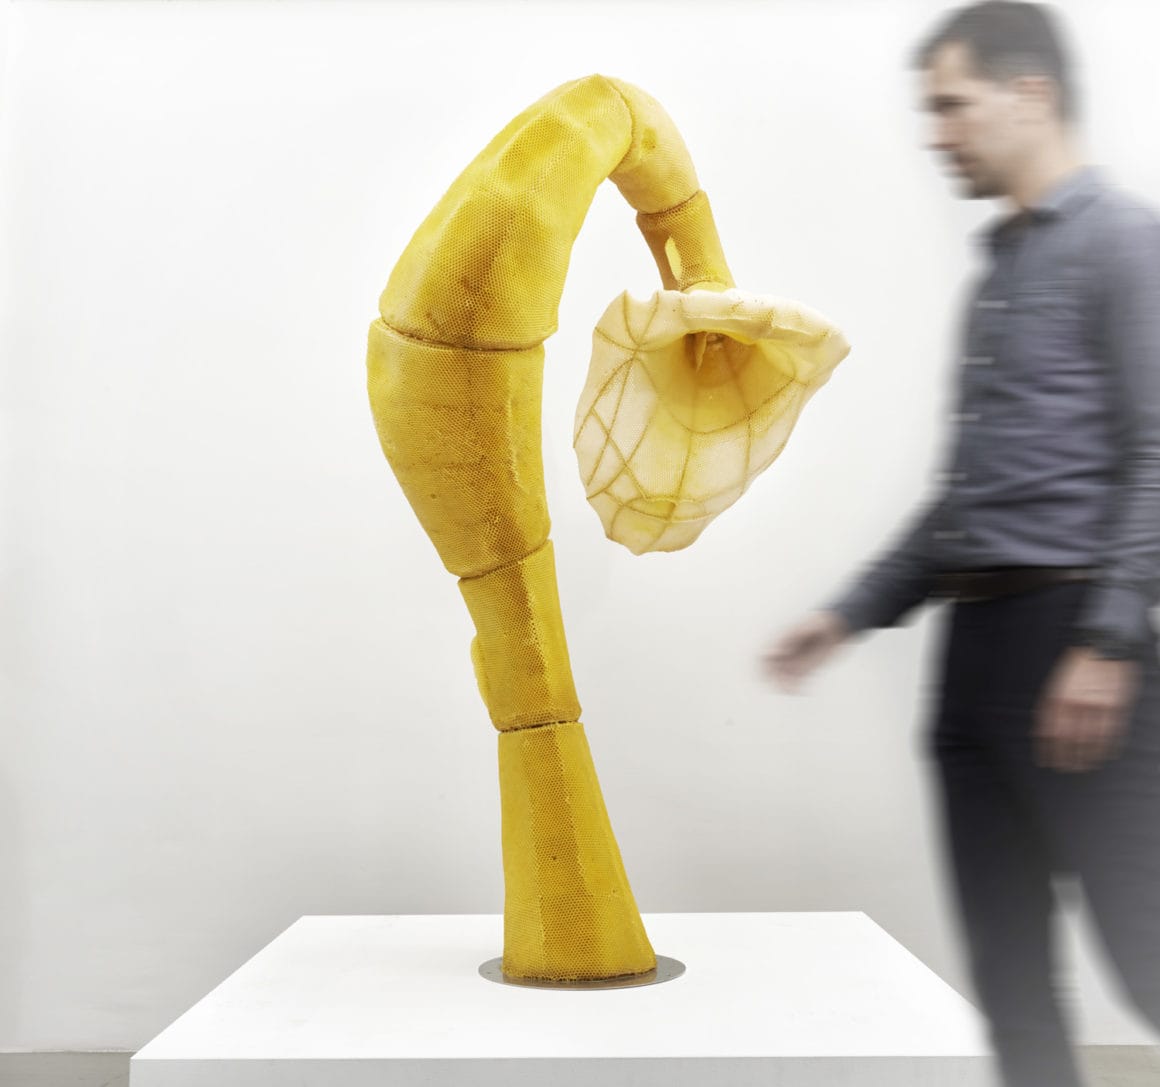 Photographie de la sculpture The Agreement (grande fleur) en cire d'abeille derrière laquelle passe un homme qui est flou. par Tomáš Libertíny